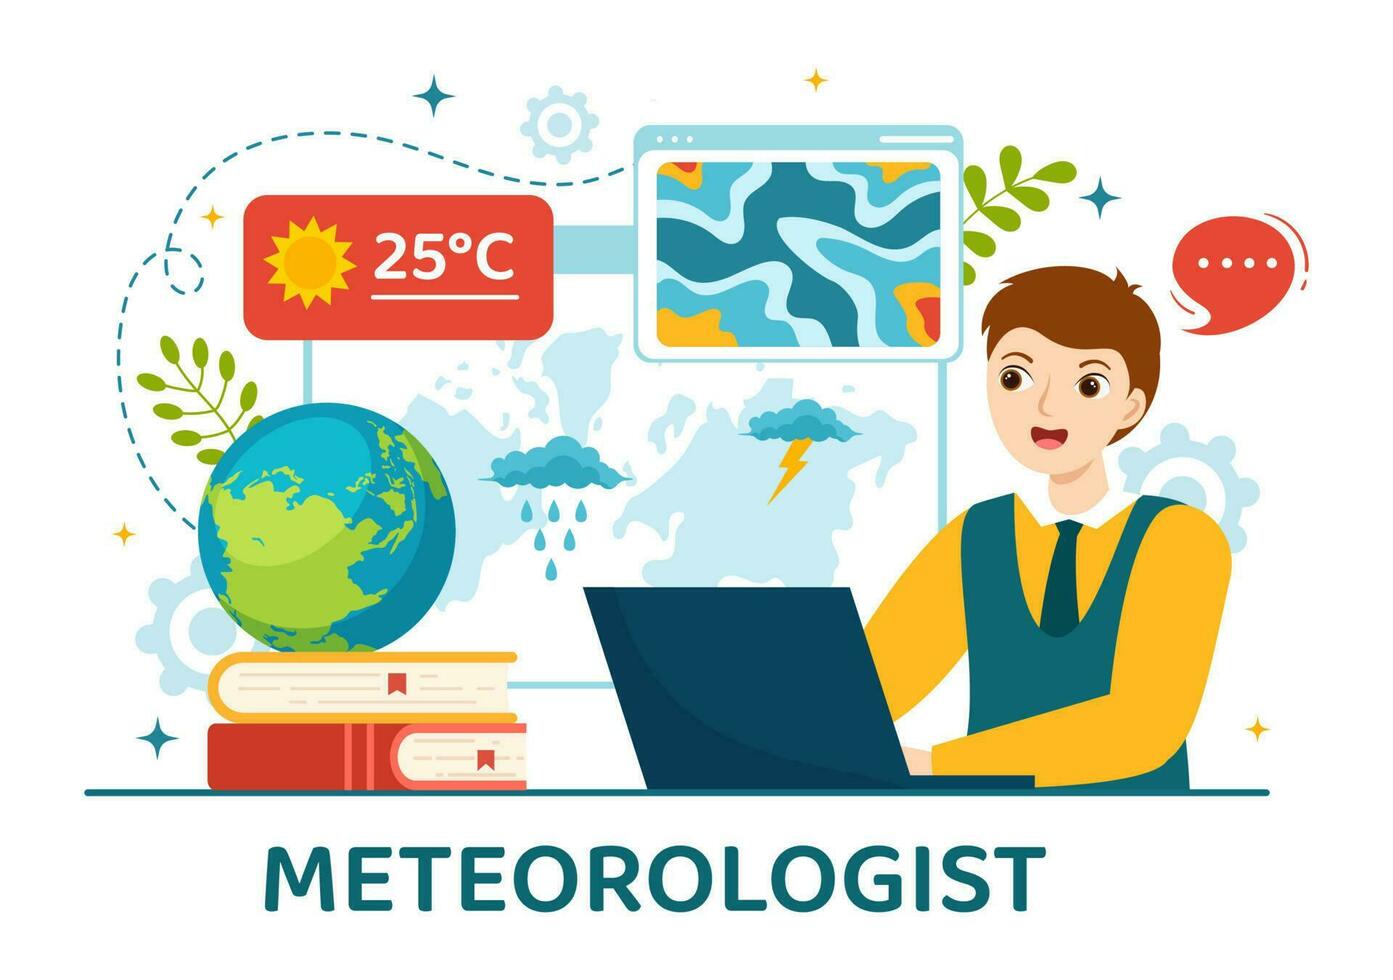 meteorologo vettore illustrazione con tempo metereologico previsione e atmosferico precipitazione carta geografica nel piatto cartone animato mano disegnato atterraggio pagina modelli